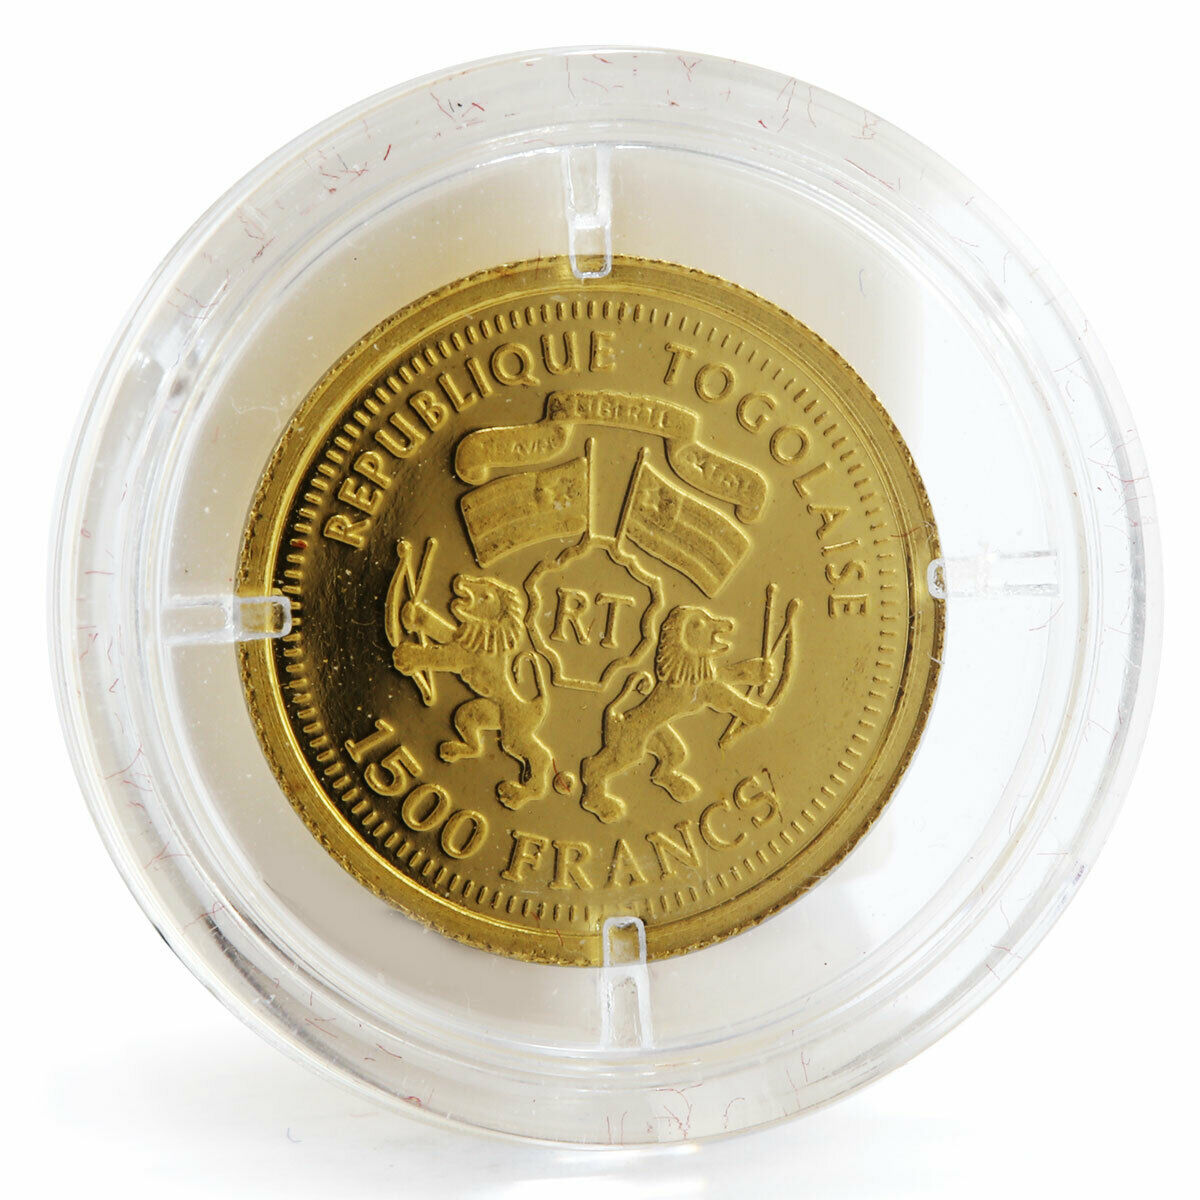 Togo 1500 francs Wilhelm Busch 1832-1908 gold coin 2007